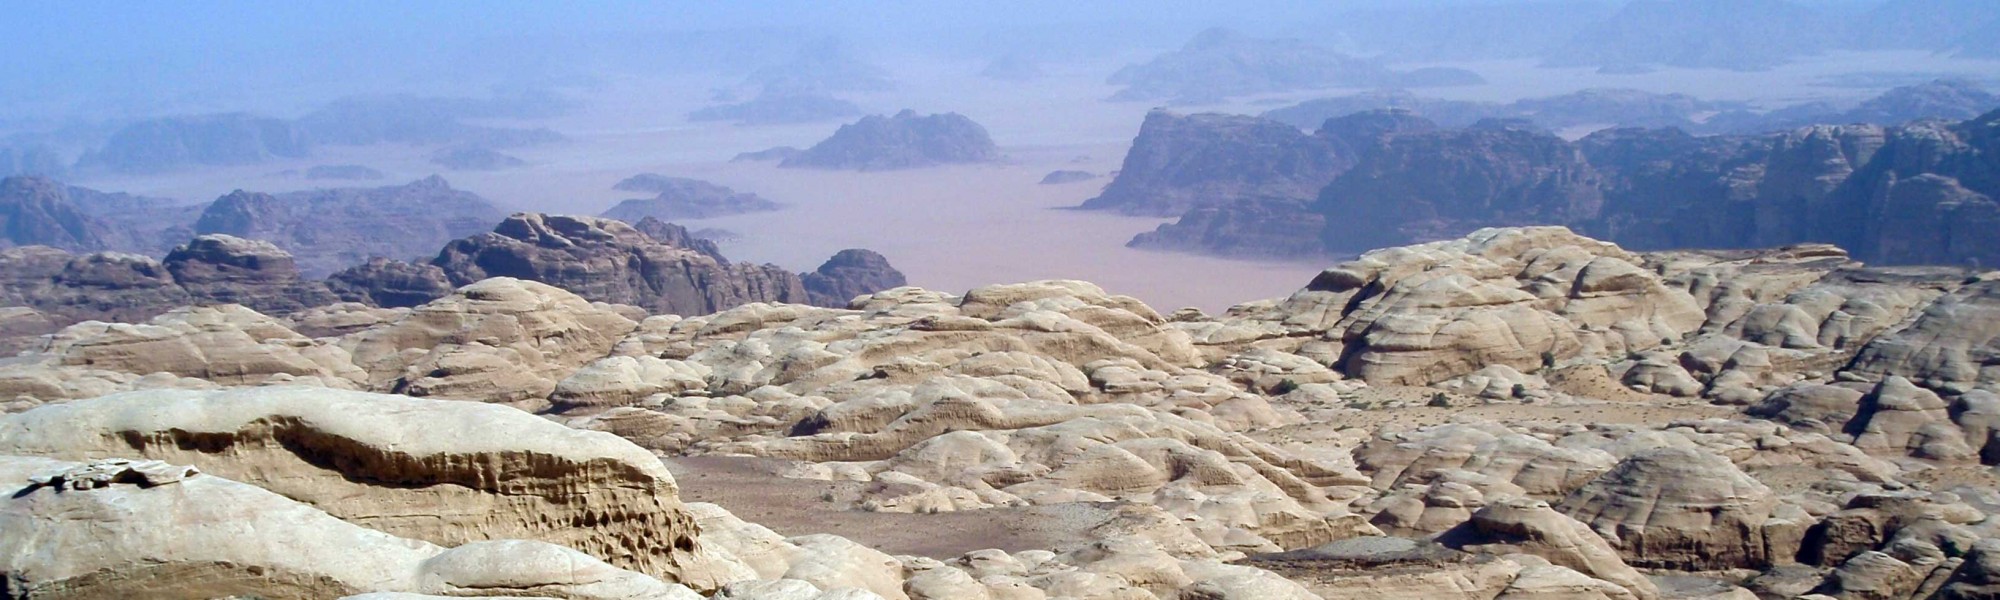 escalade grandes voies Wadi Rum